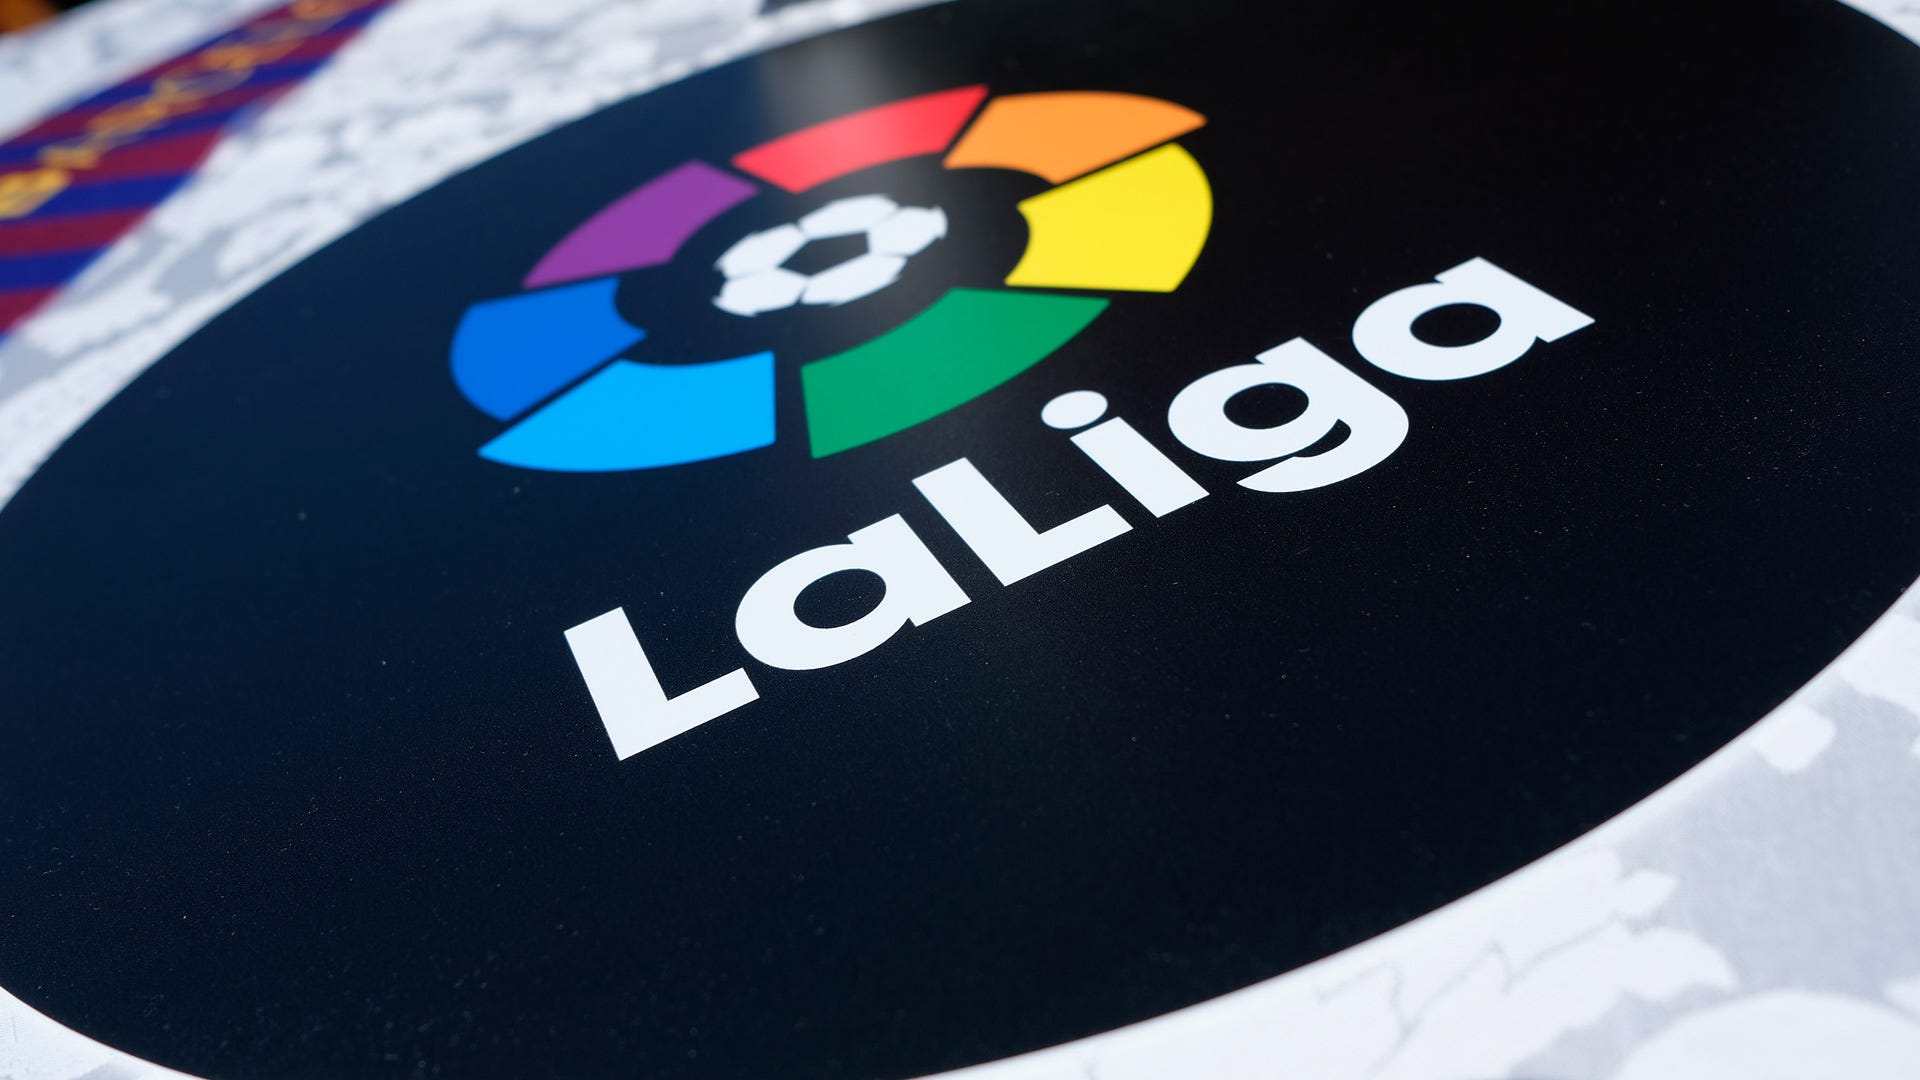 LaLiga im LIVE-STREAM DAZN zeigt Spaniens Beletage bis mindestens 2021 Goal Deutschland